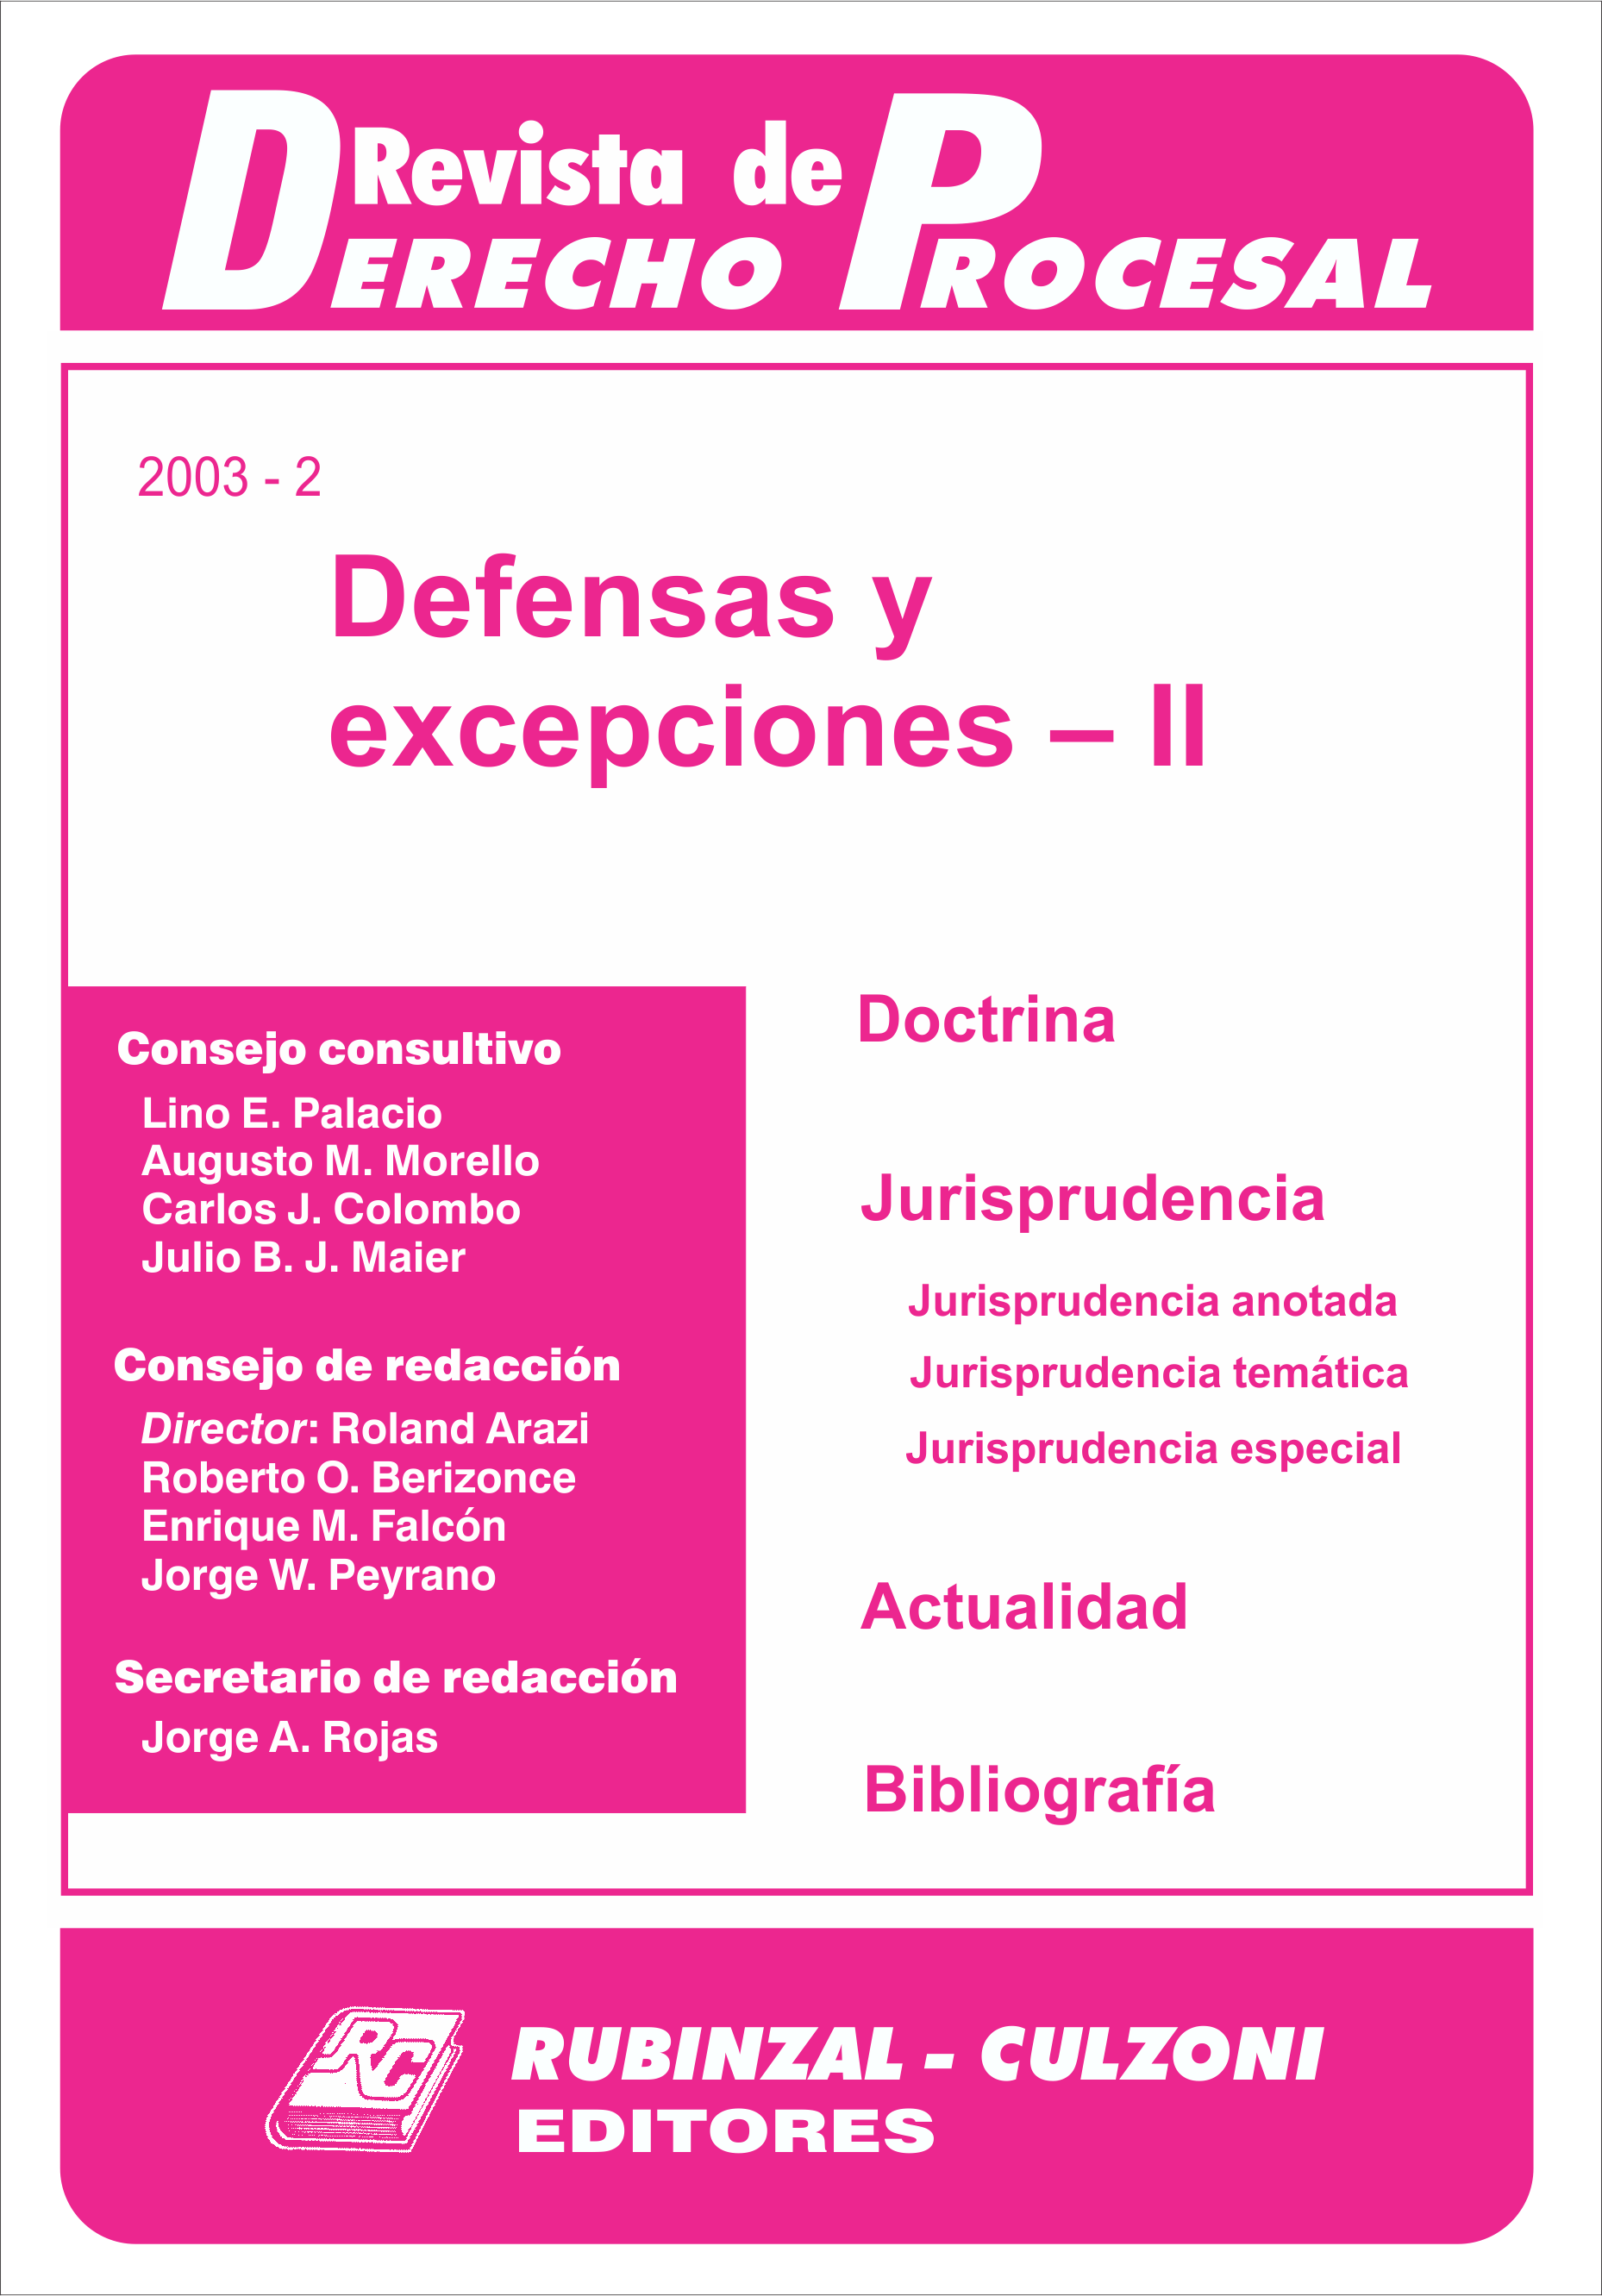 Revista de Derecho Procesal - Defensas y excepciones - II.